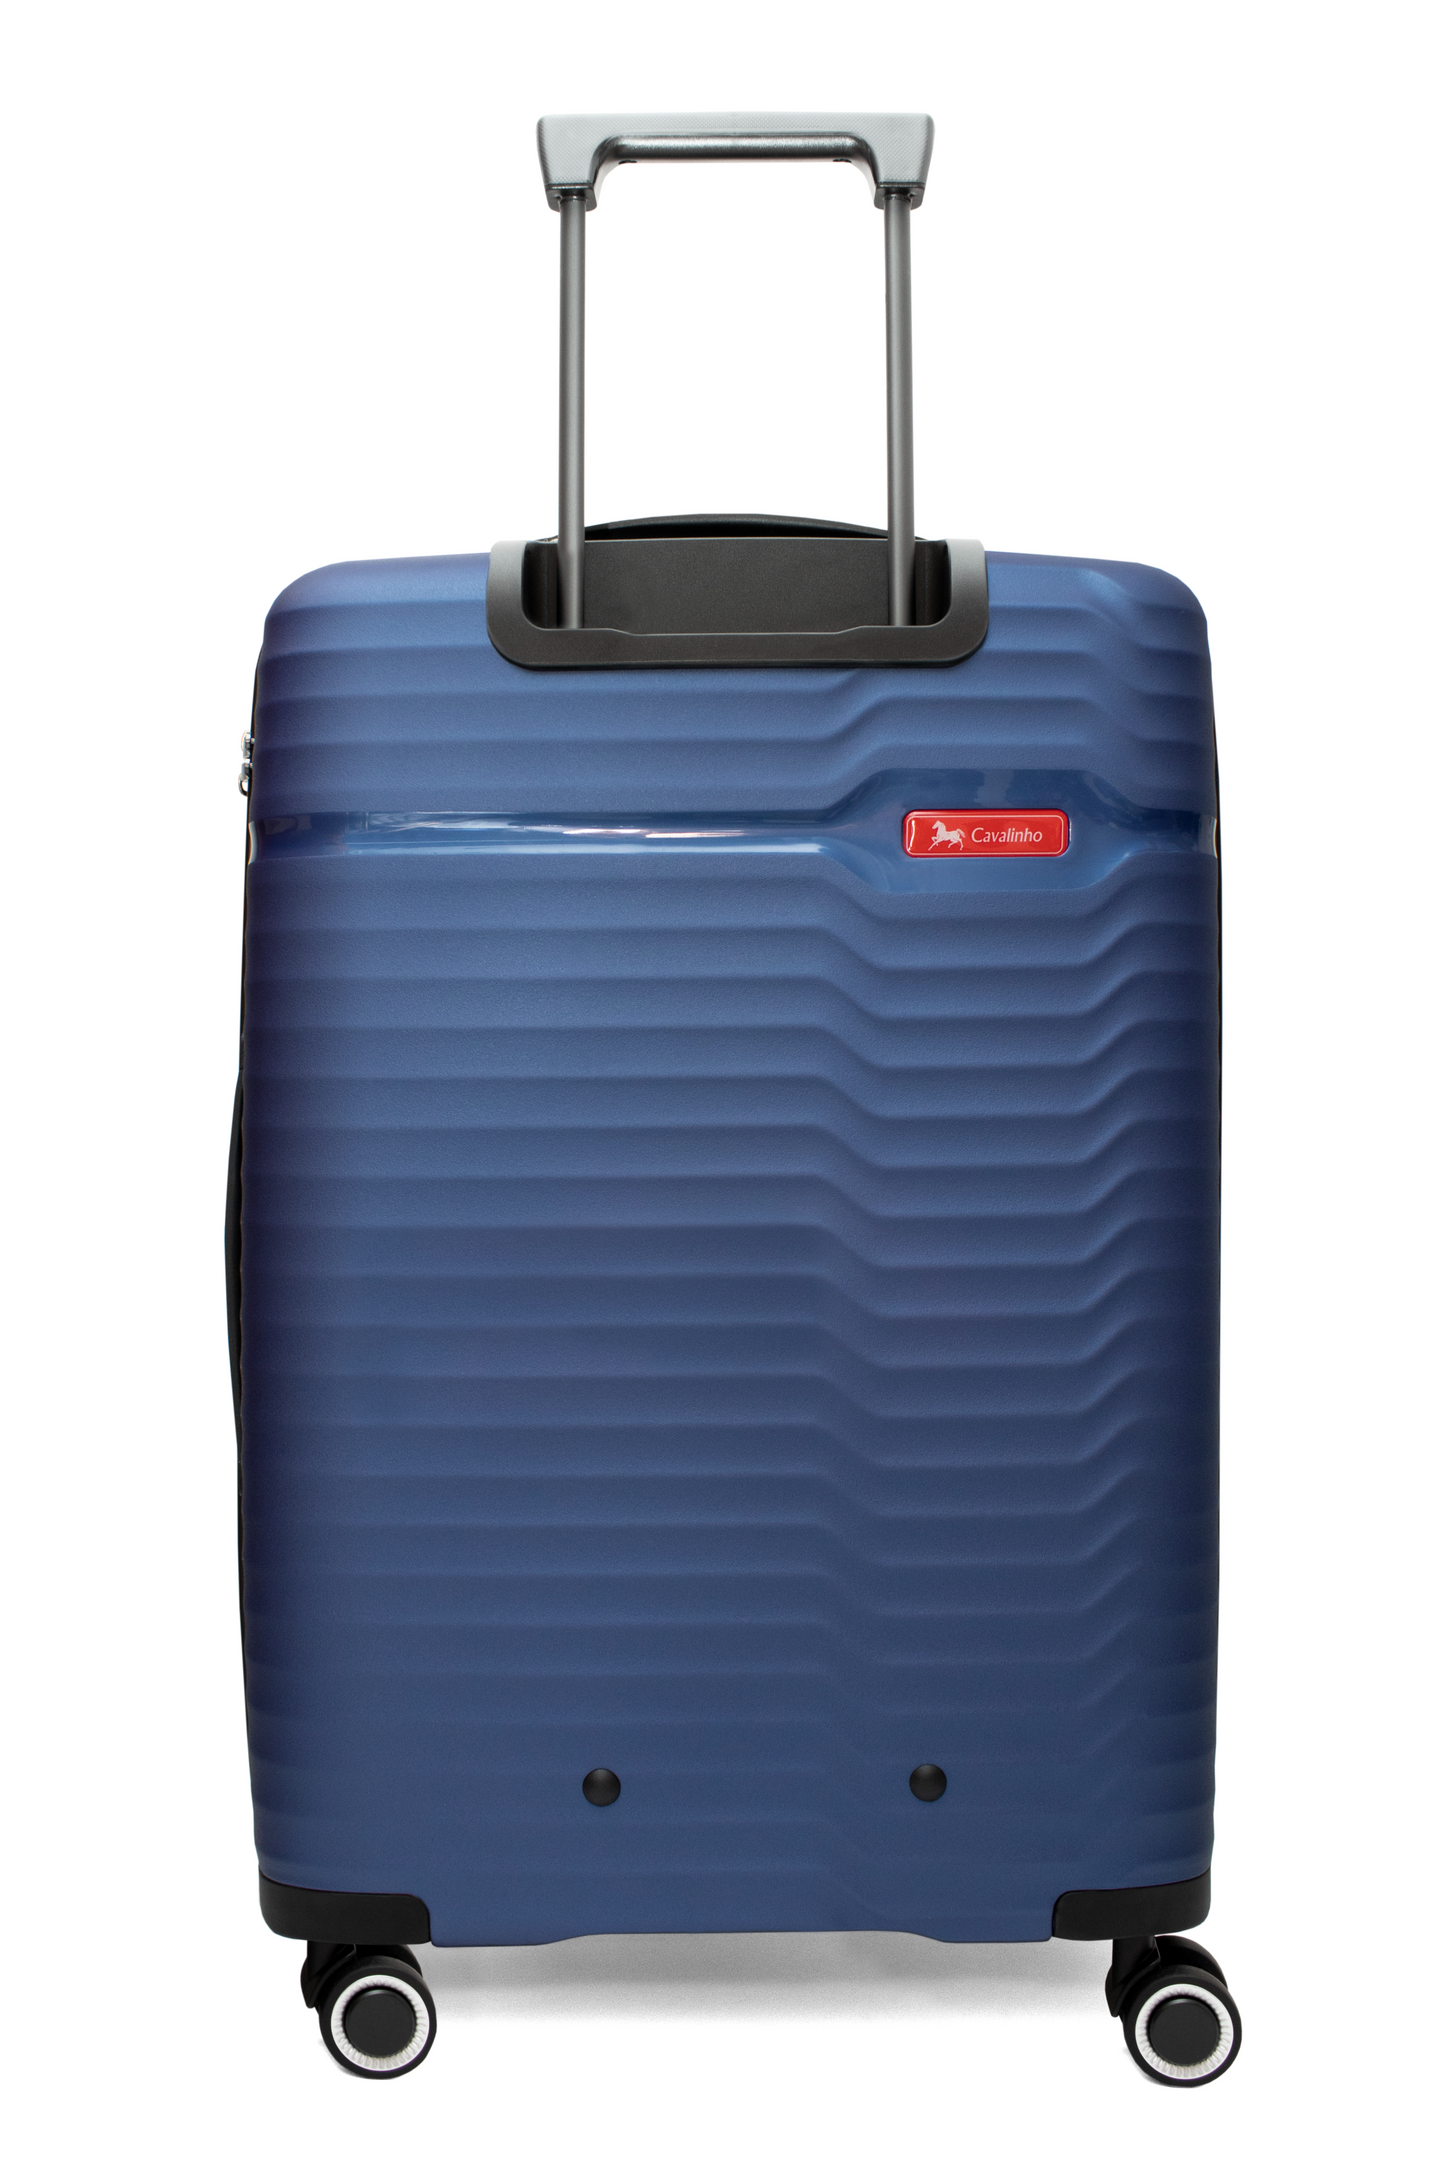 Cavalinho 2 Piece Hardside Luggage Set (14" & 28") - 14 inch & 28 inch Set SteelBlue - 68010003.03.24_3S_caf09f19-3f6b-42a1-a59e-205d78a0a549